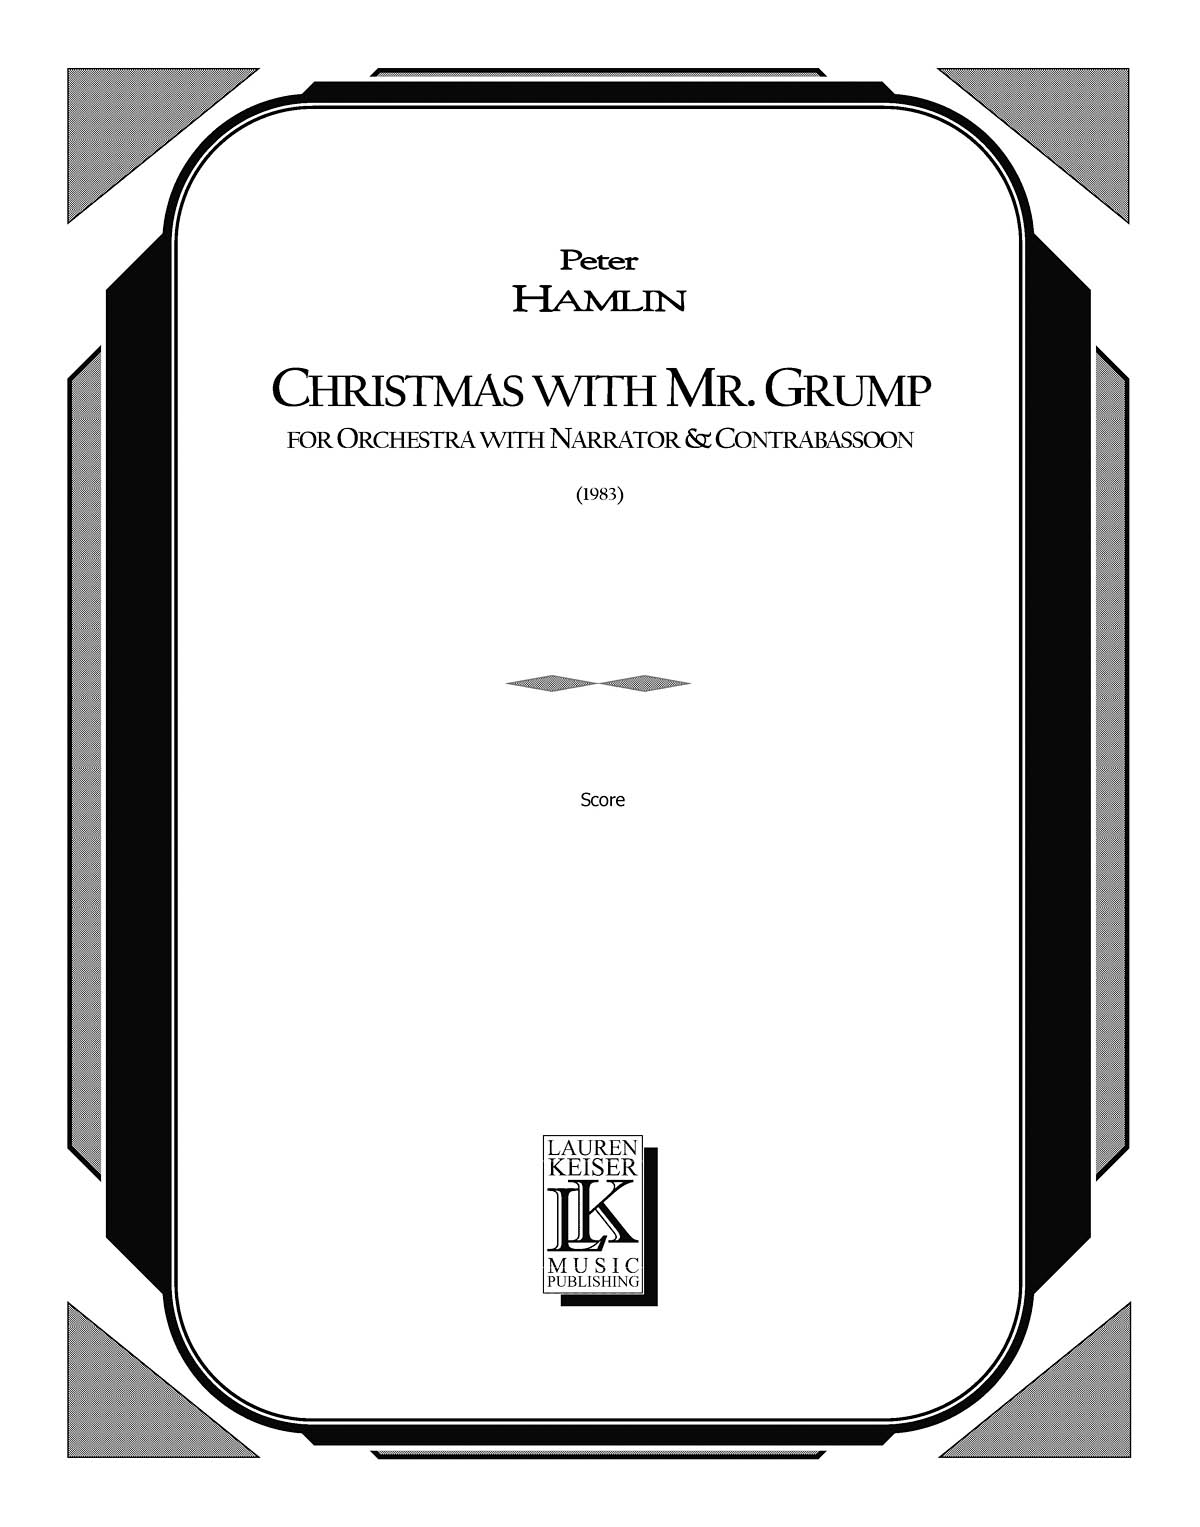 Christmas with Mr. Grump